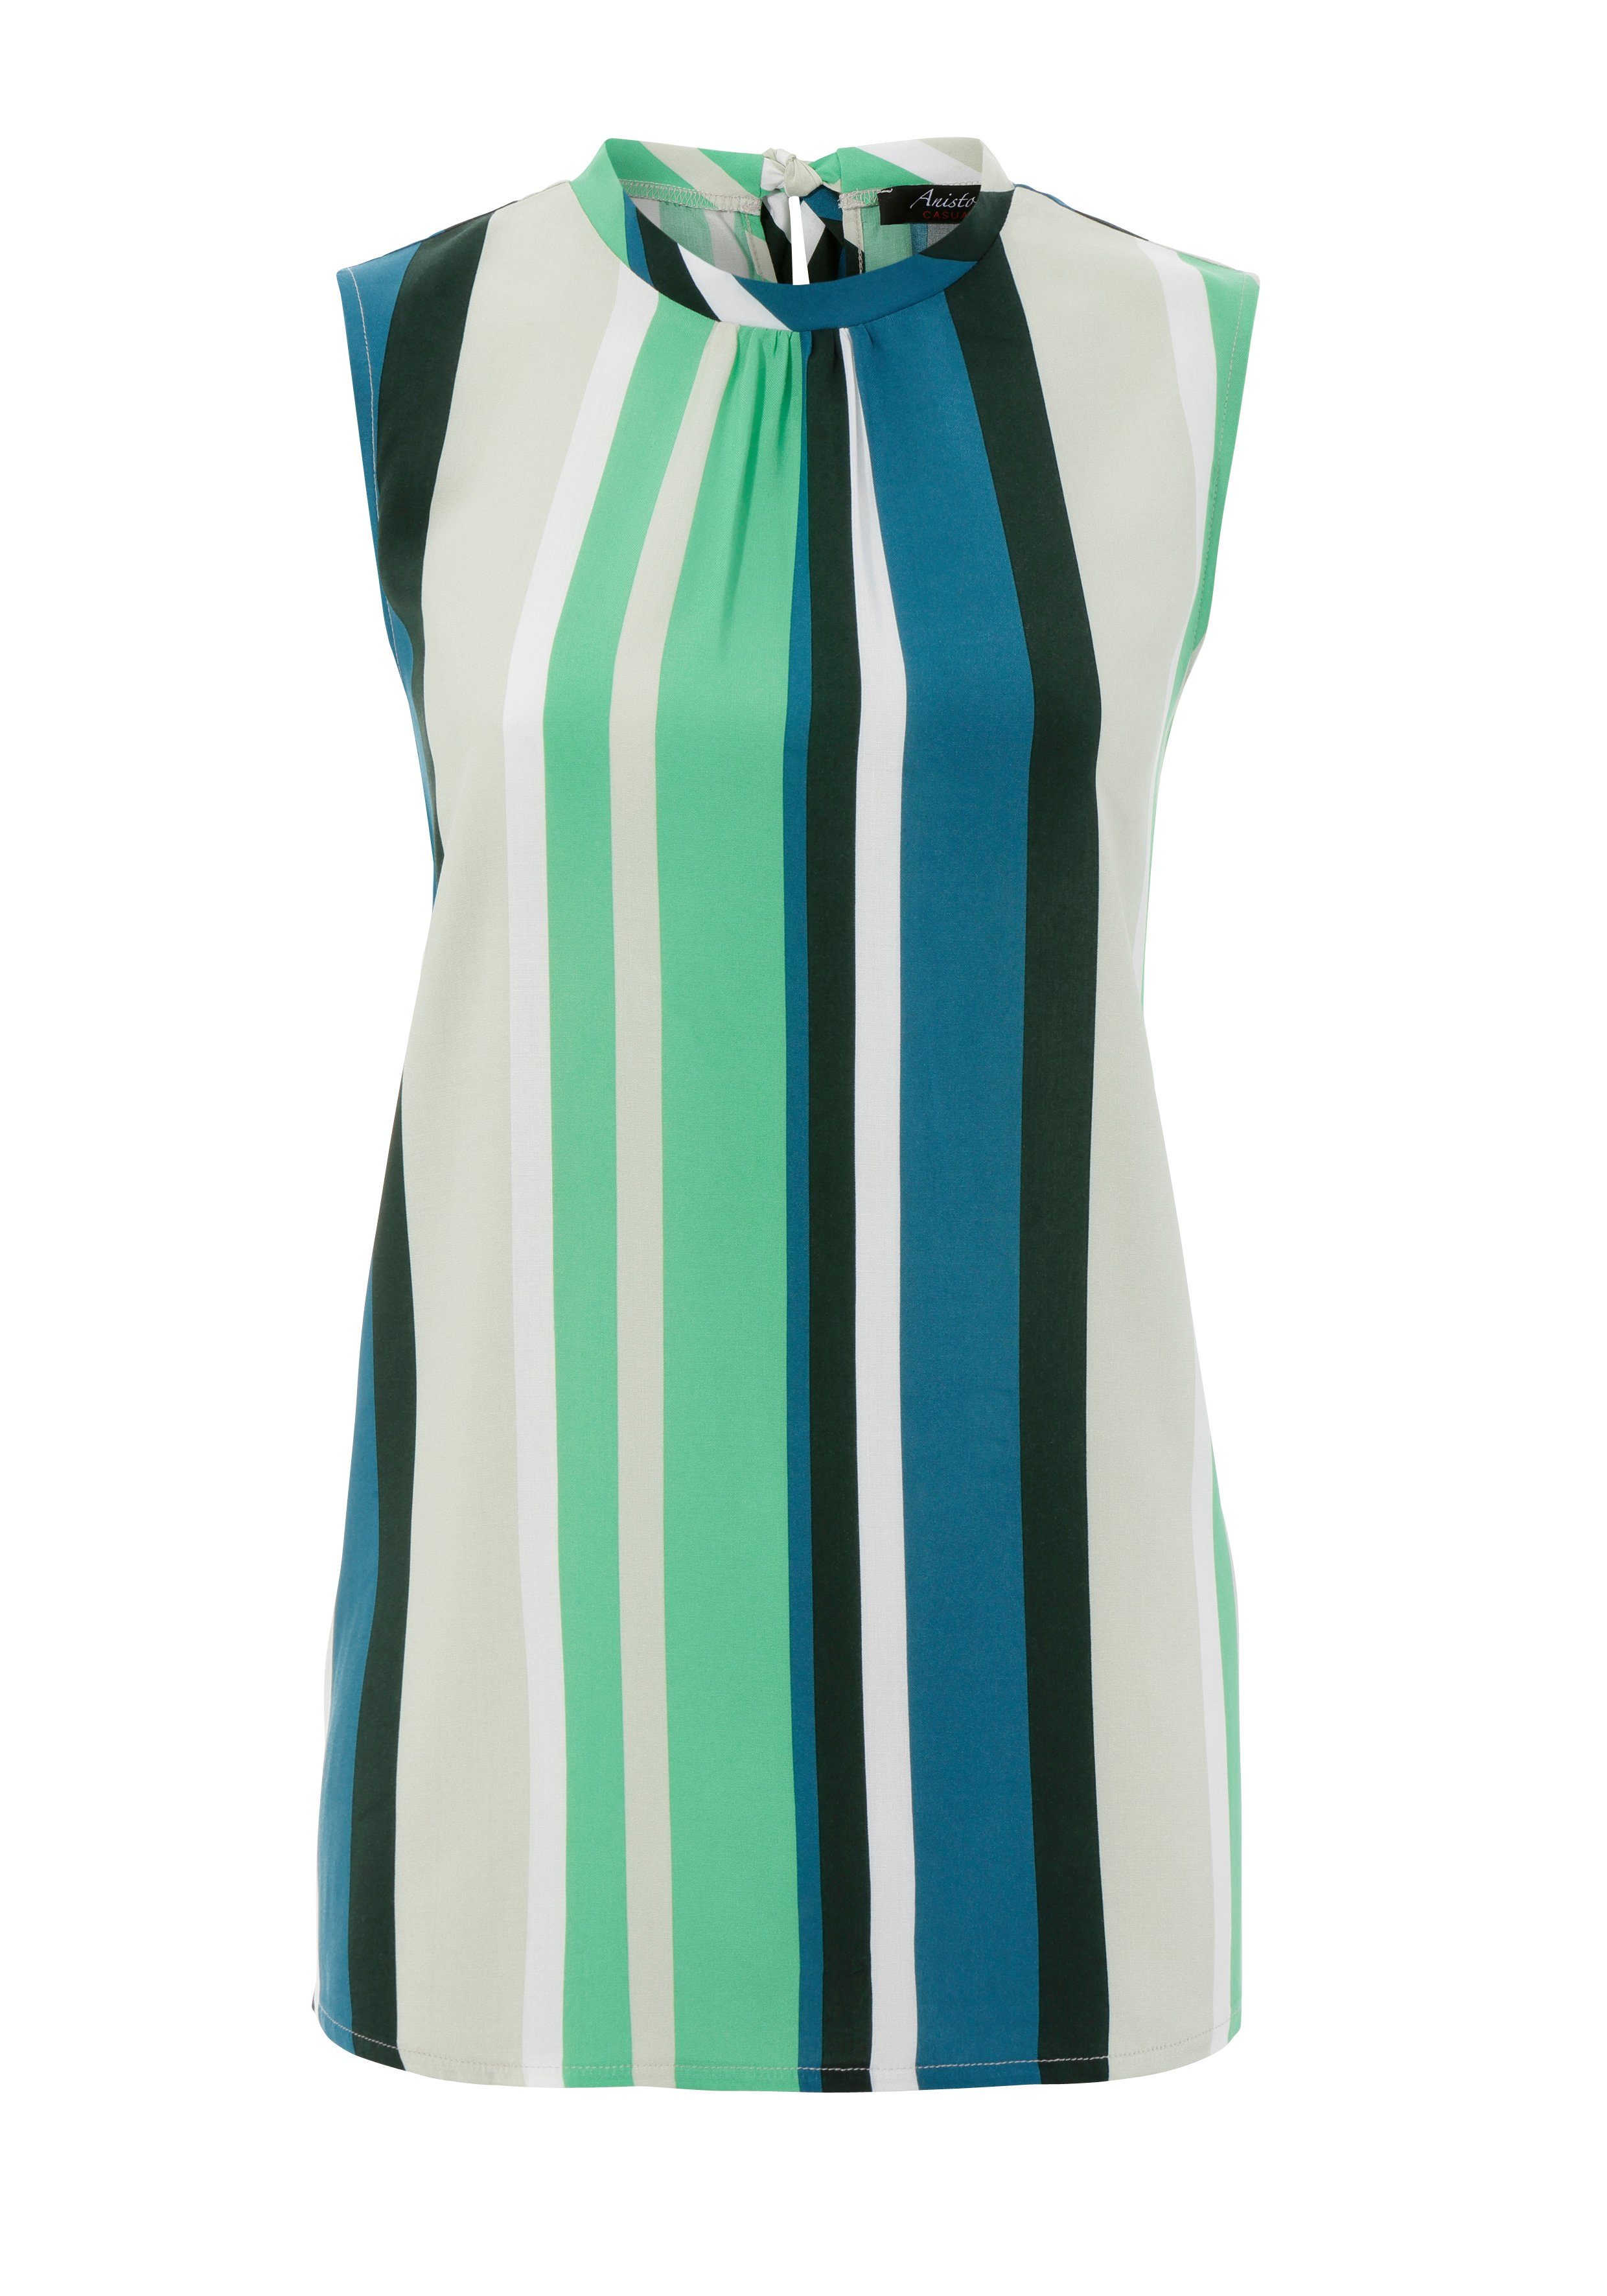 CASUAL Aniston farbharmonischen Blusentop apfelgrün-sand-petrol-dunkelgrün-weiß Streifen mit